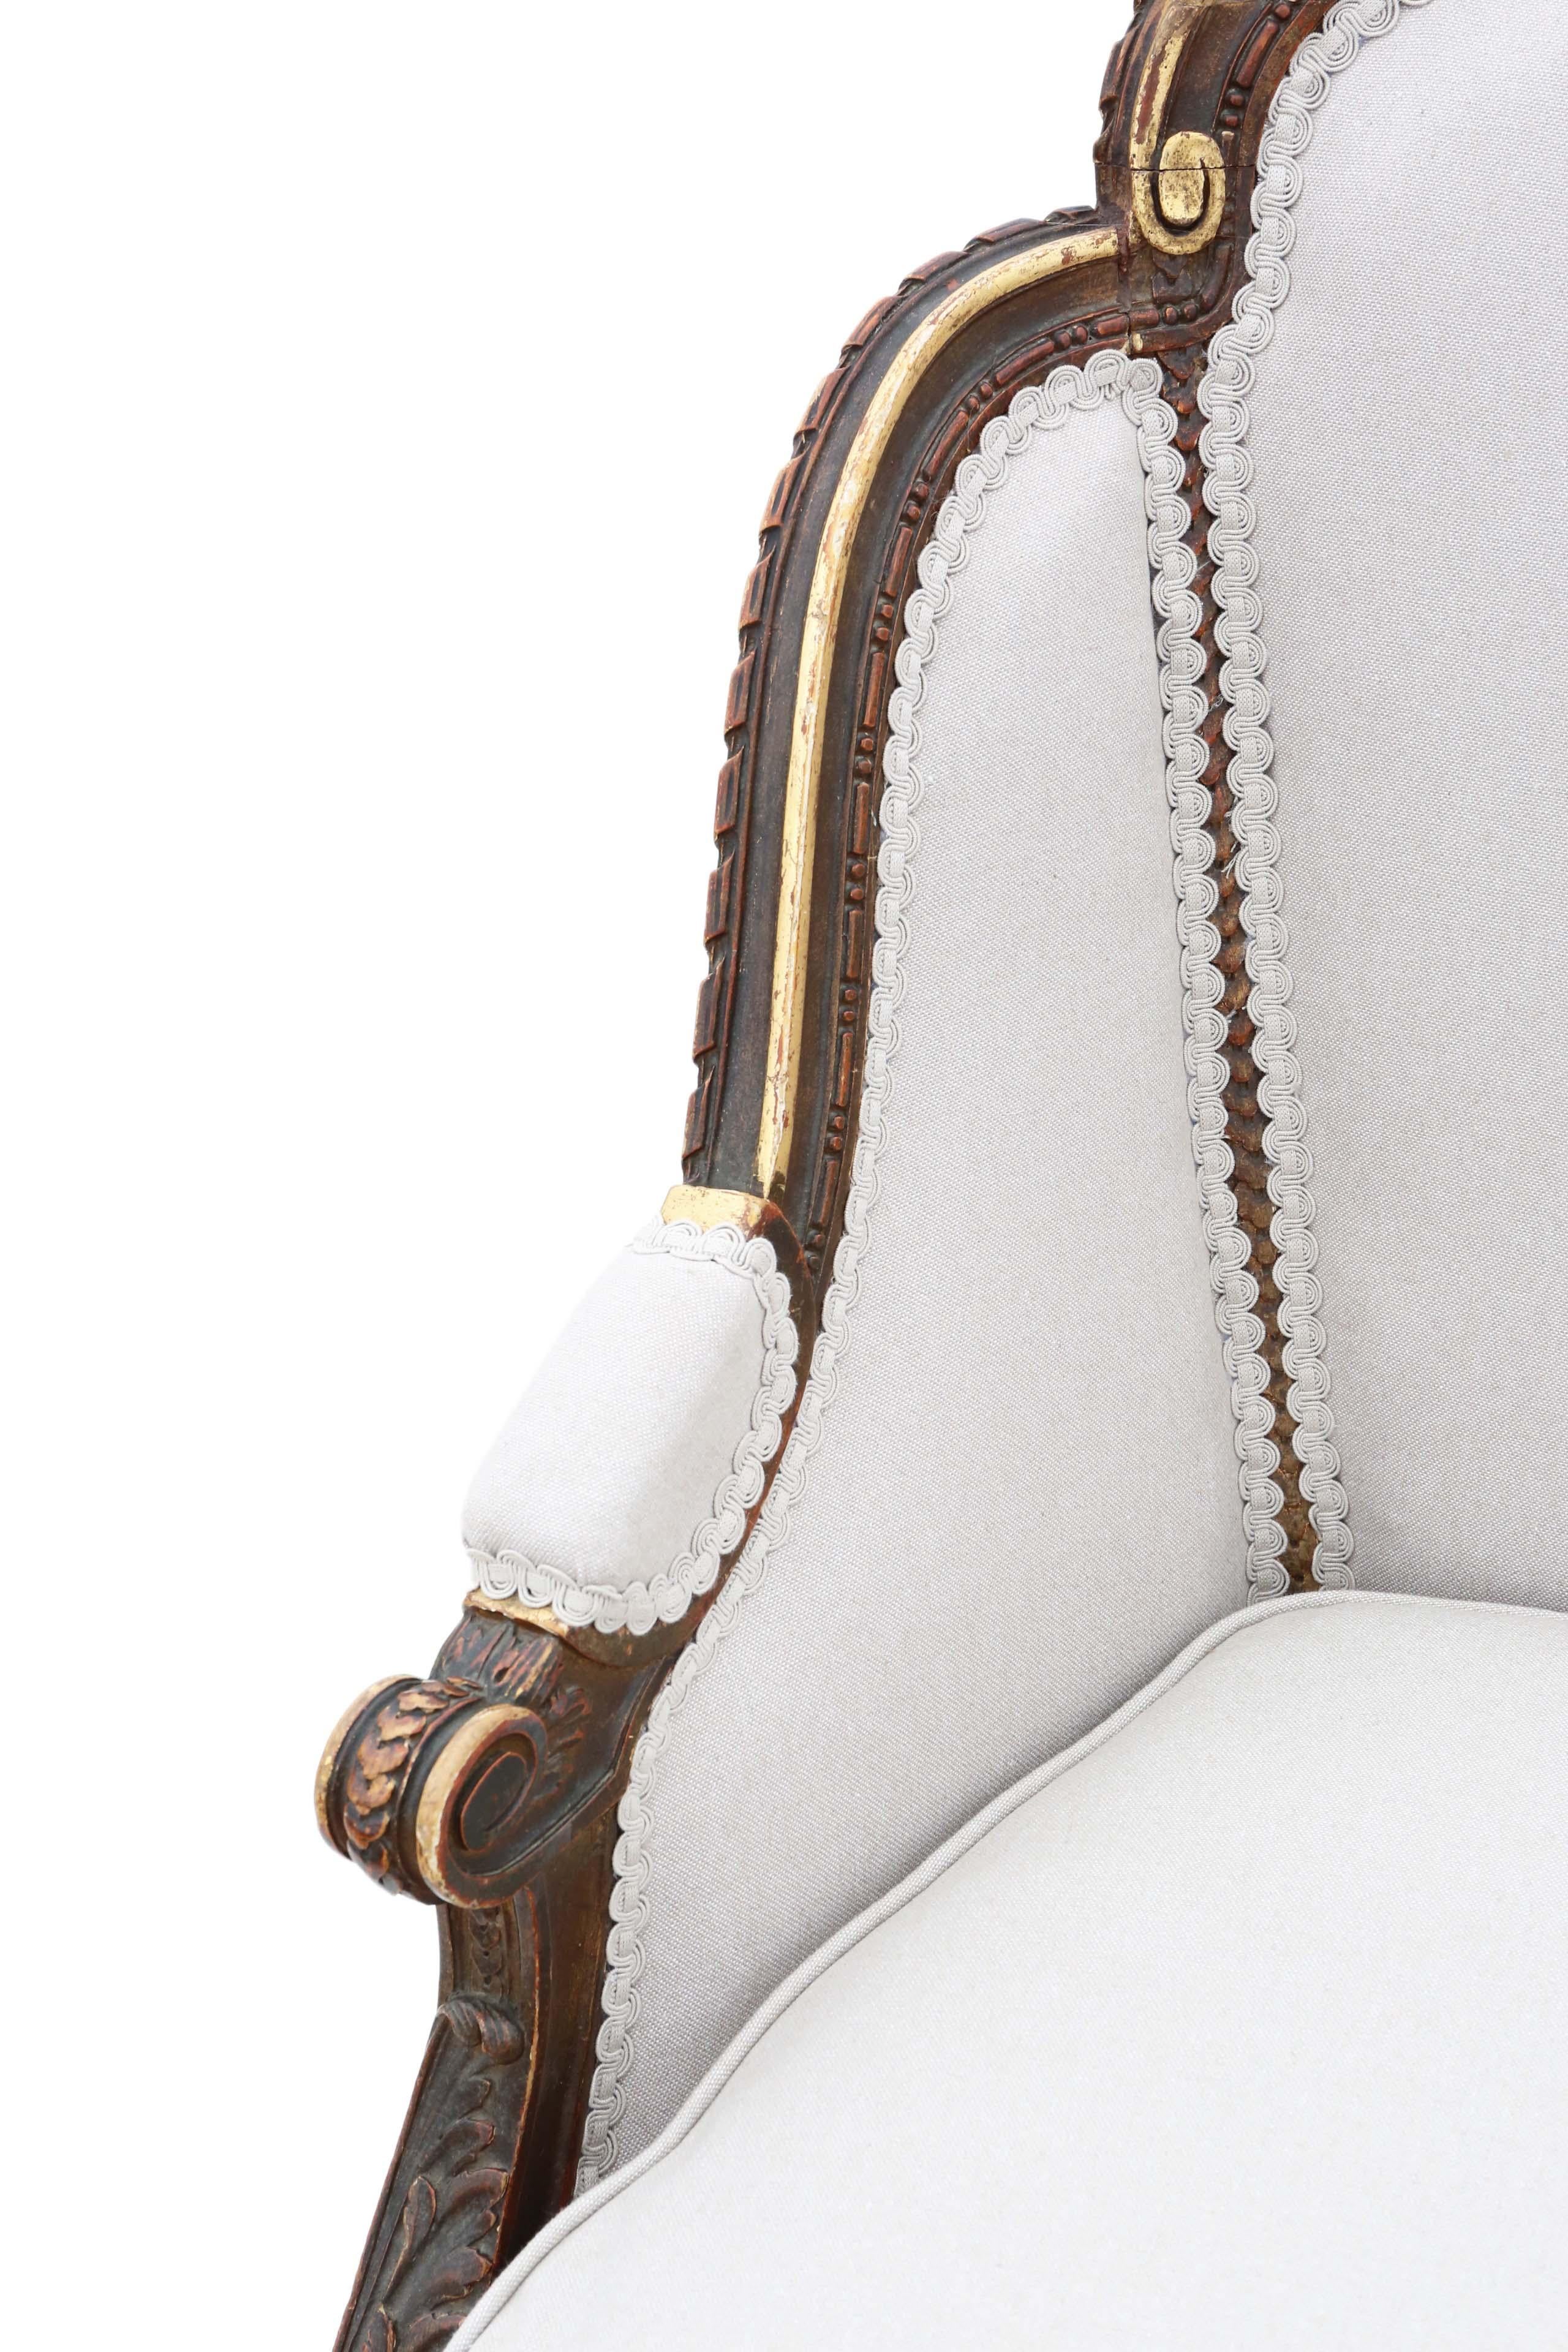 Antique Rare Gilt 19th Century Chair Armchair 5